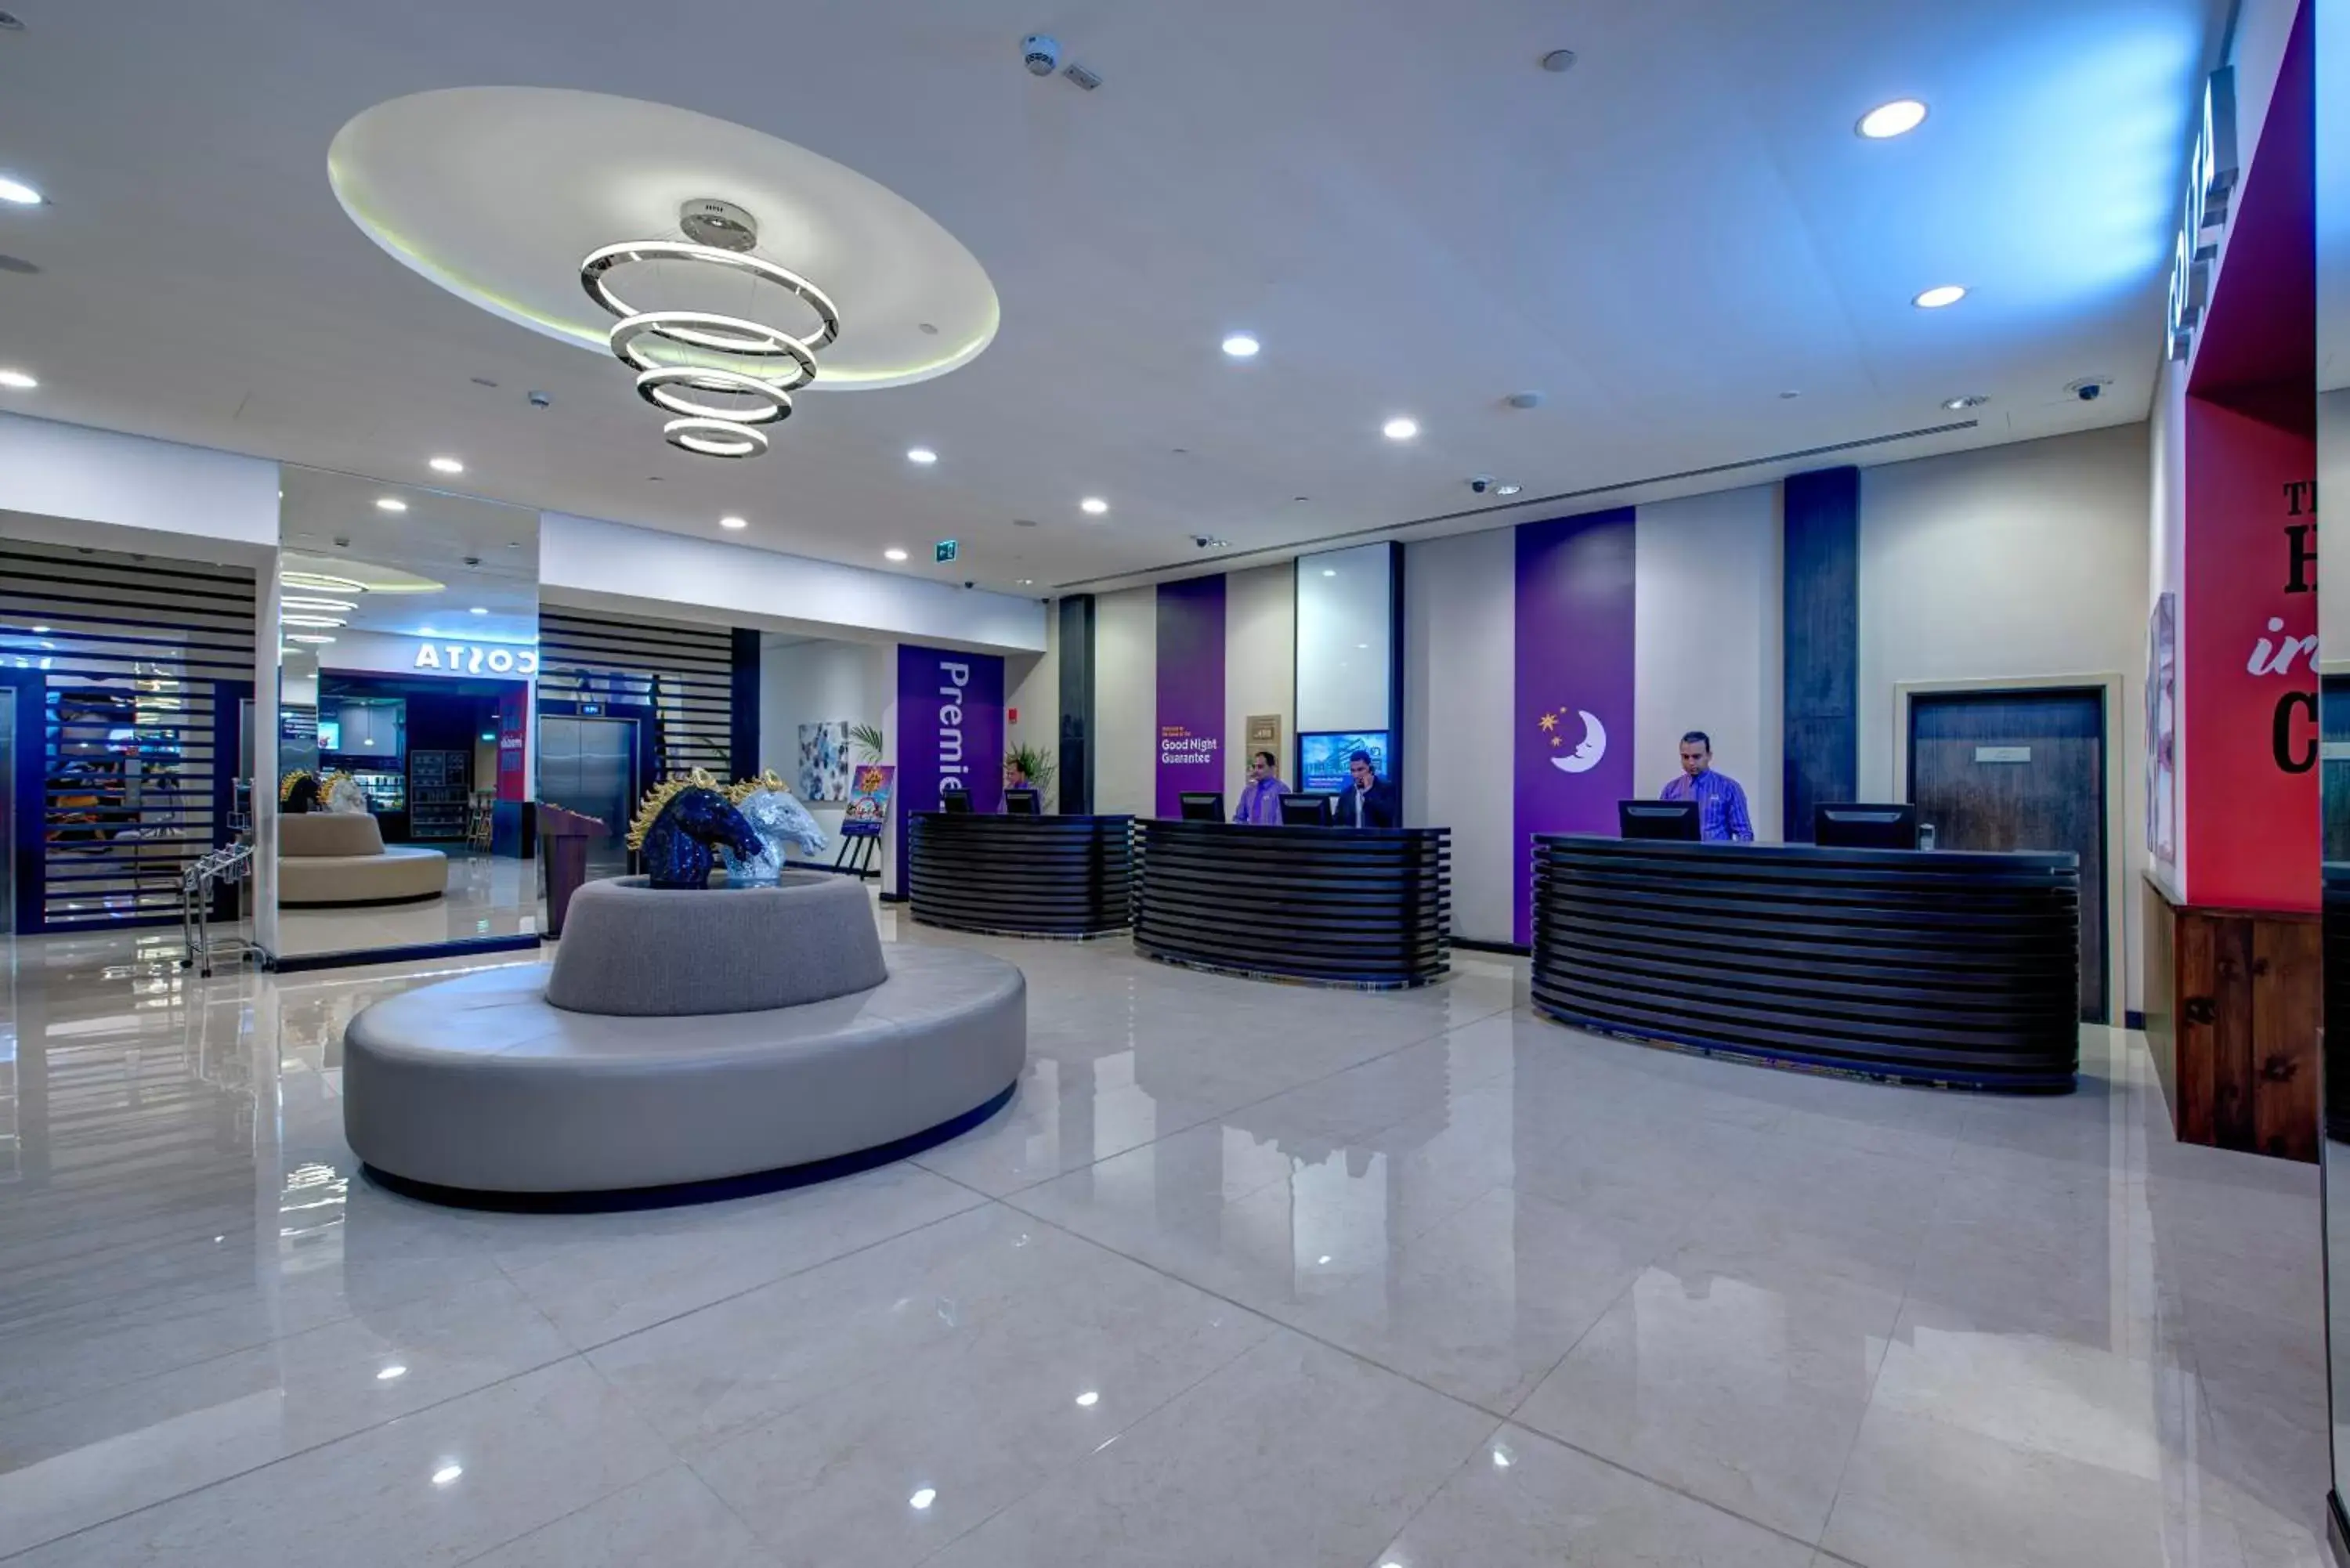 Staff in Premier Inn Dubai Ibn Battuta Mall